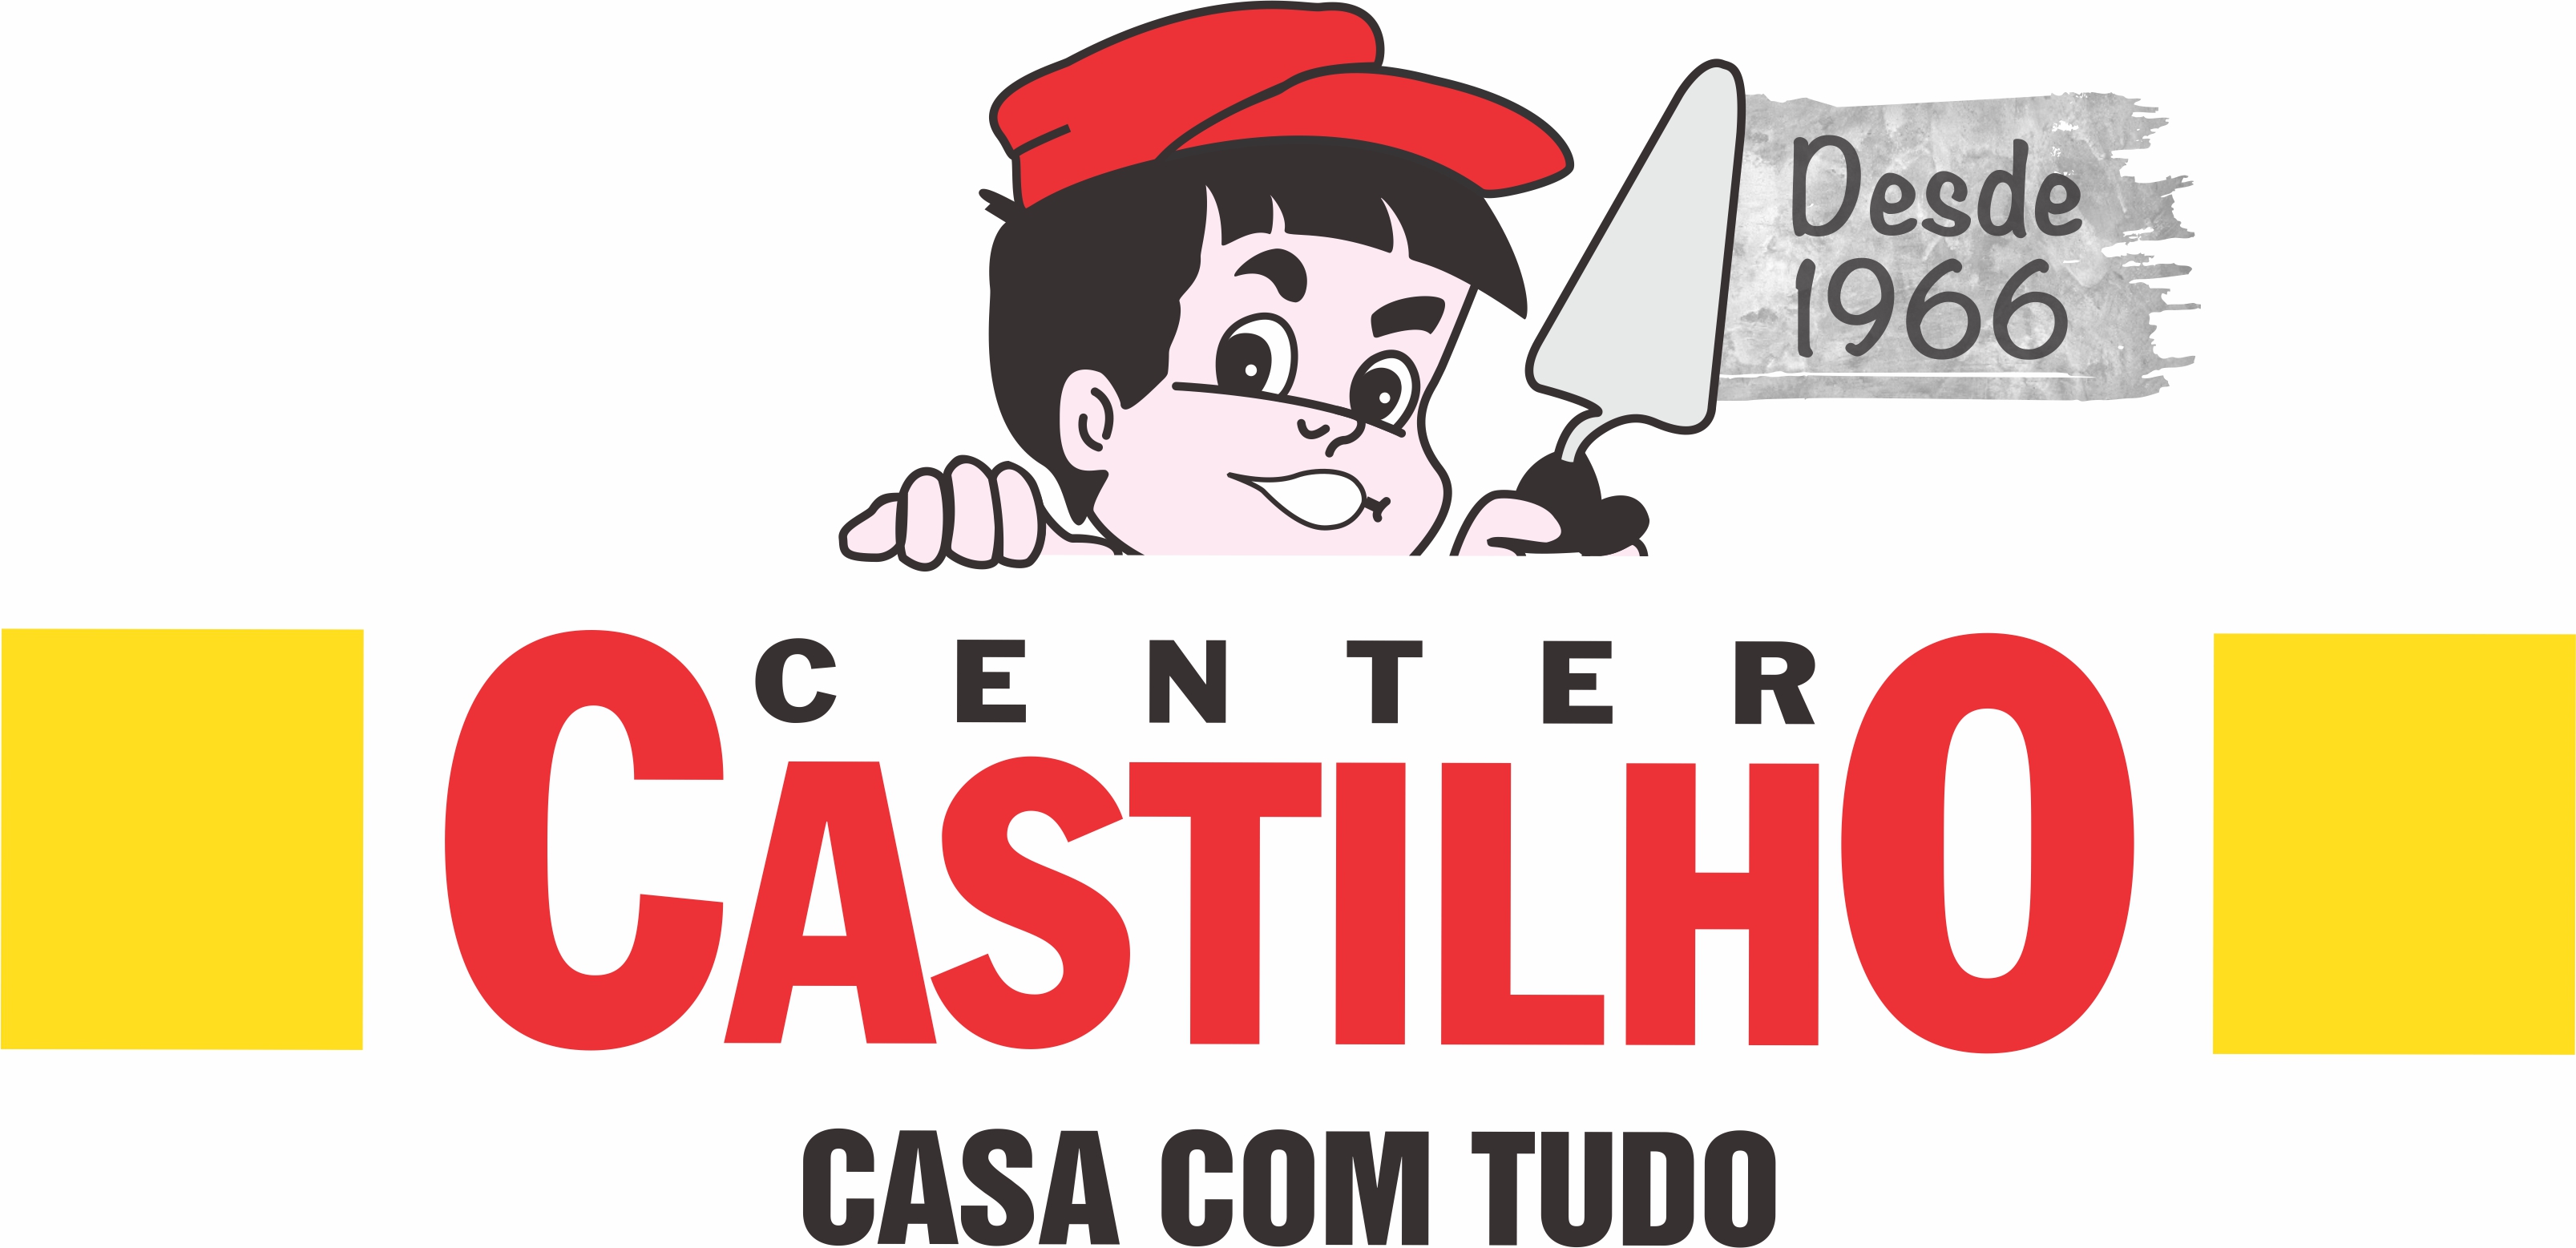 CENTER CASTILHO MATERIAIS - Materiais de Construção - Praia Grande, SP